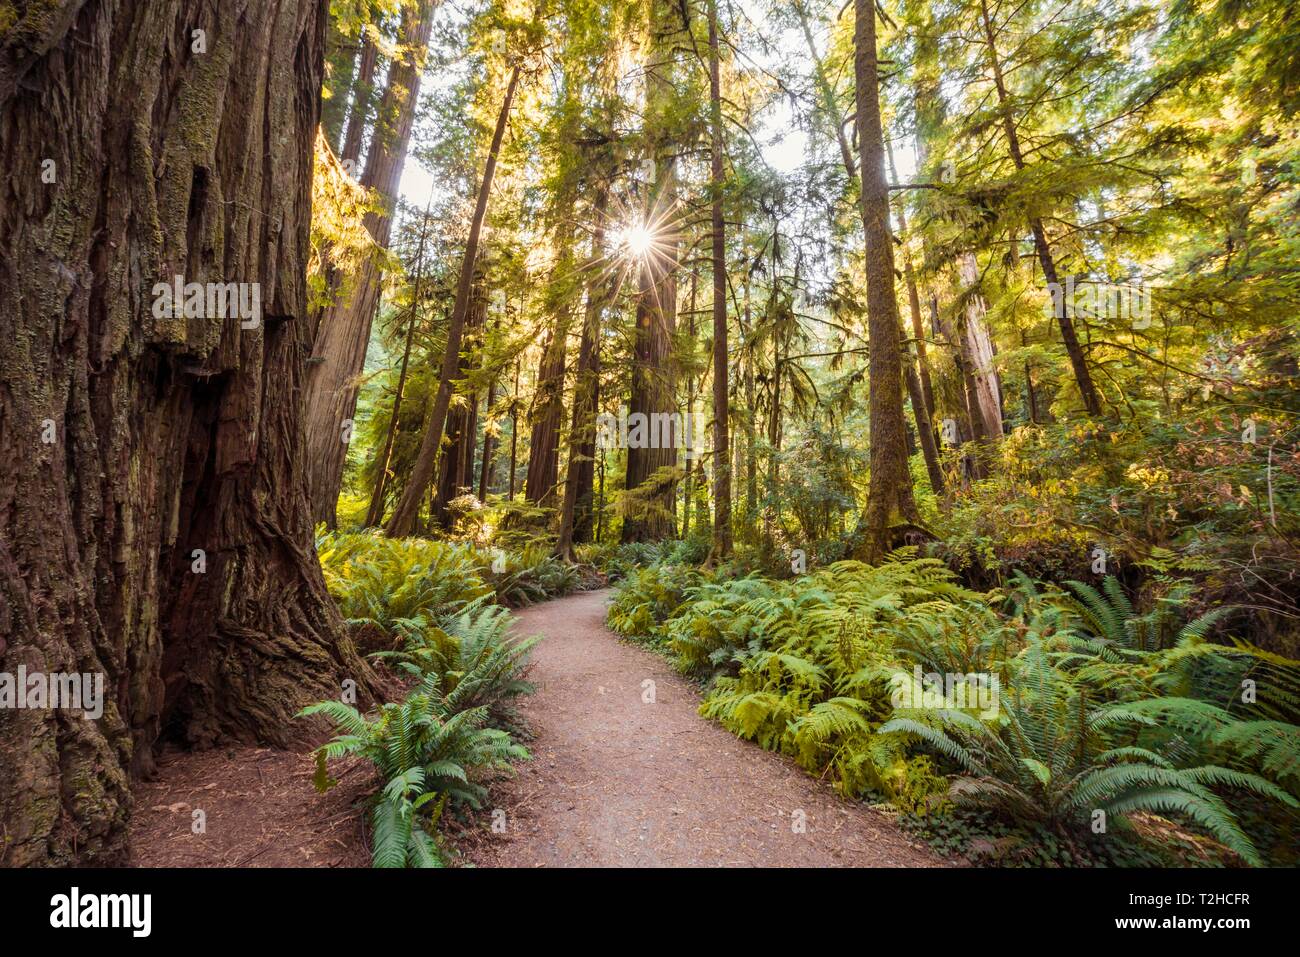 Senderos a través del bosque con árboles Sequoia costera (Sequoia sempervirens) y helechos, vegetación densa, Jedediah Smith Redwoods State Park Foto de stock